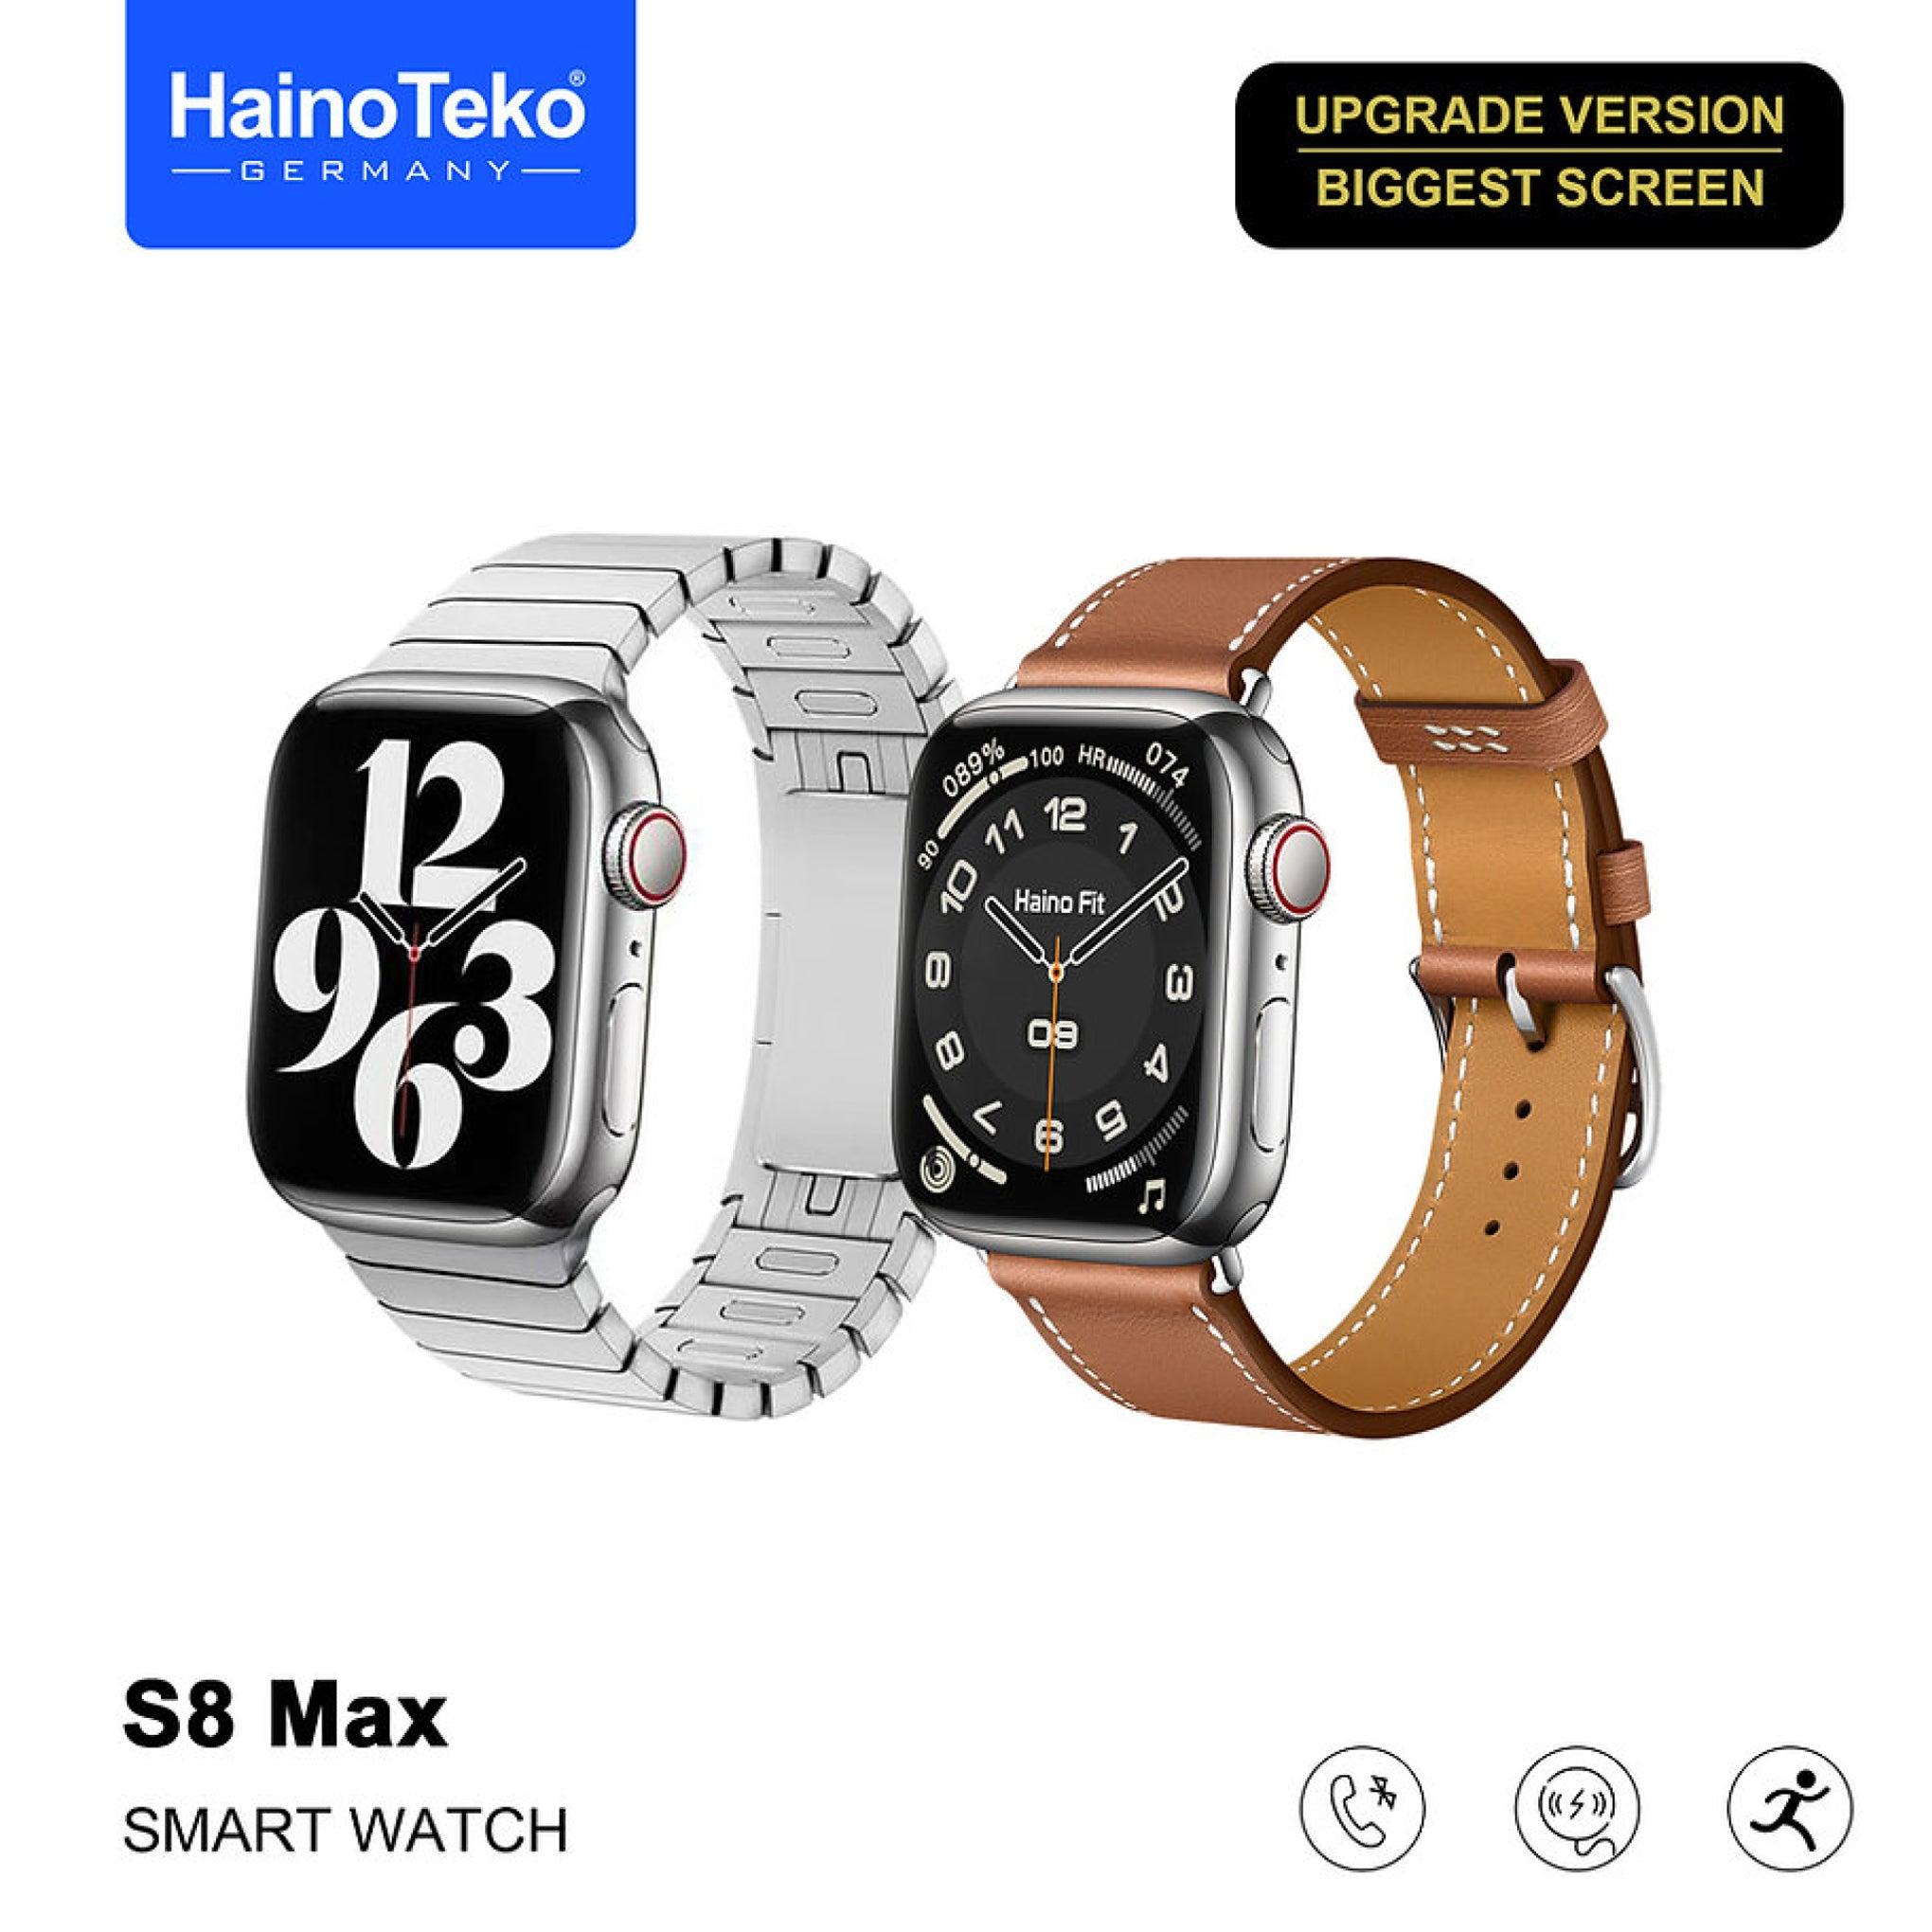 ساعة يد ذكية رجالية S8 ماكس بحزامين وشاحن لاسلكي هاينو تيكو Haino Teko Germany Smart Watch S8 Max With Two Set Strap And Wireless Charger For Men's